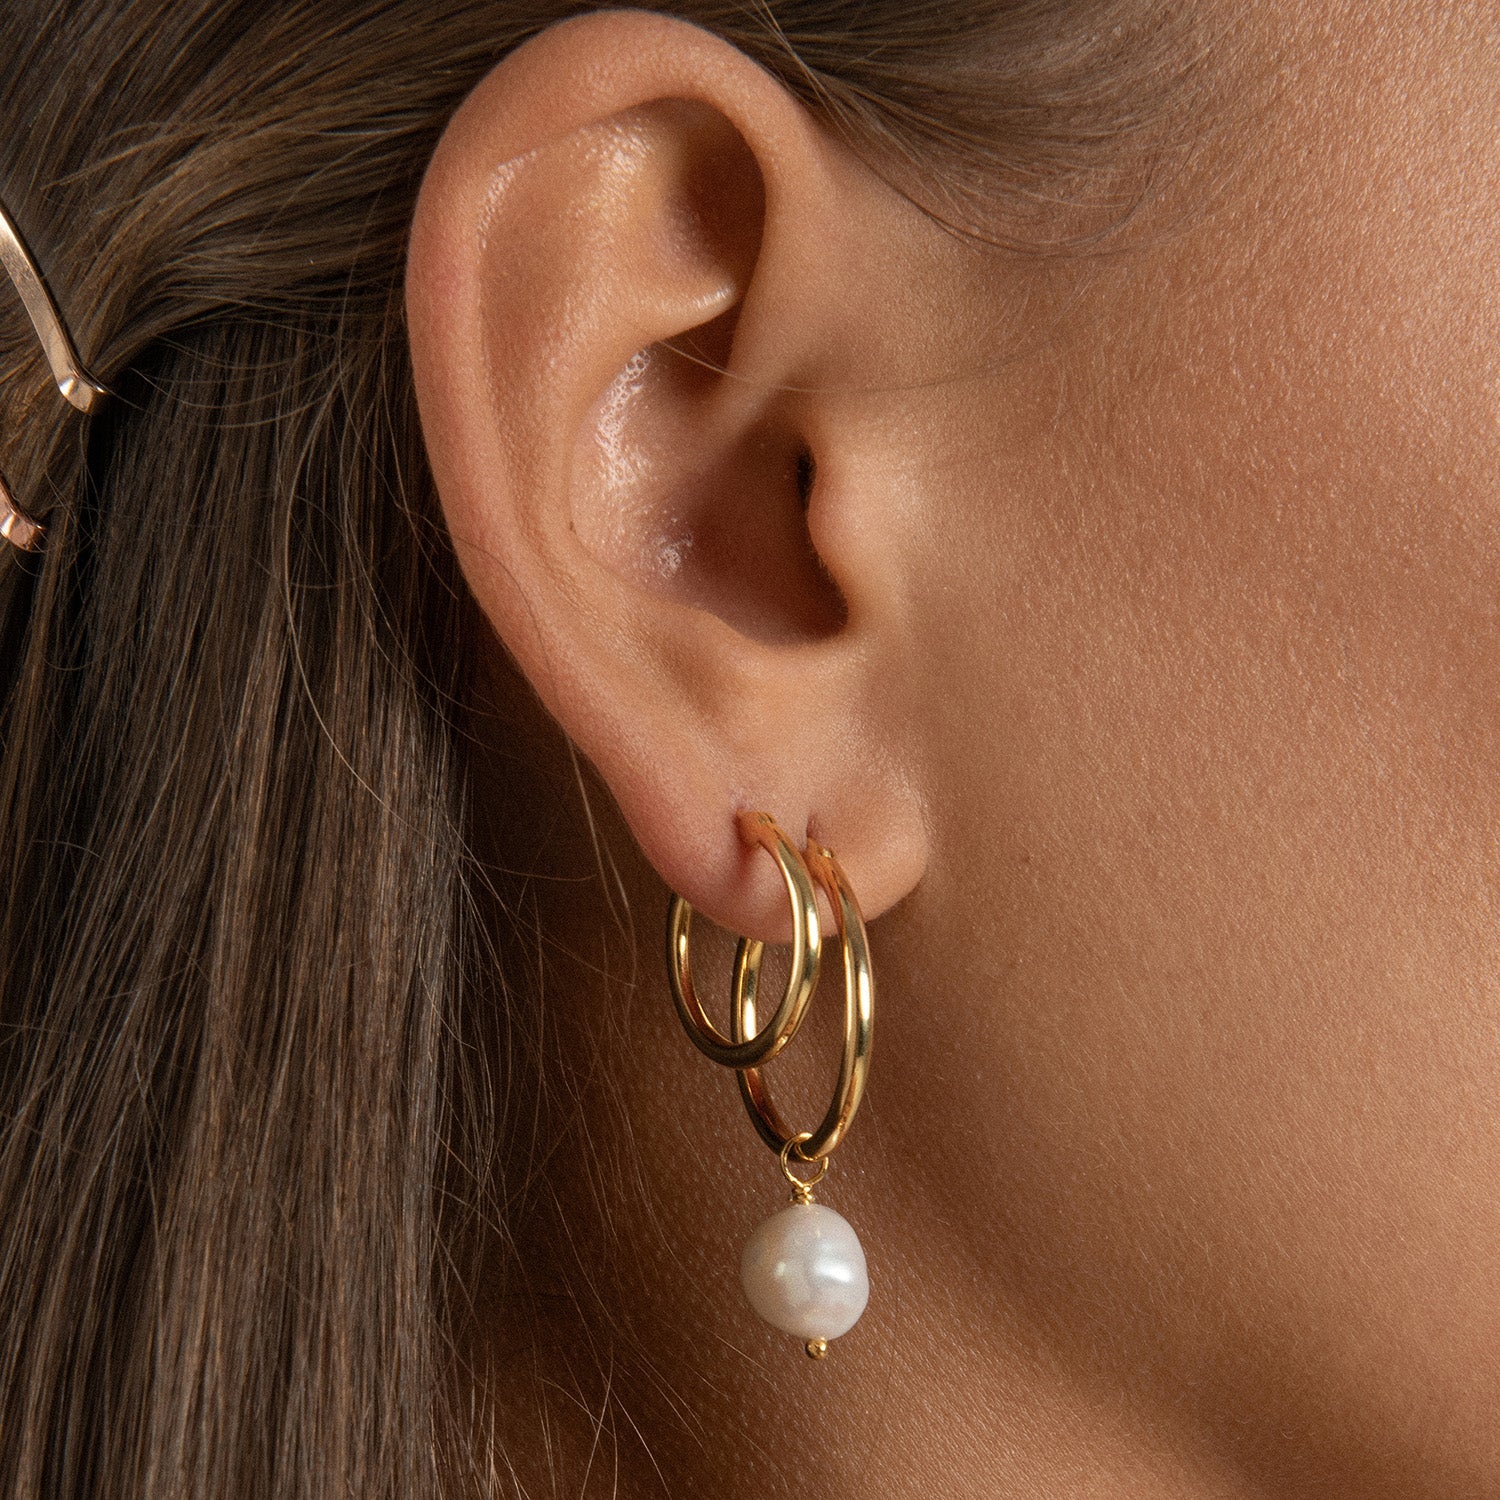 Venus Gold Hoop Earrings With Pink Pearl Charm